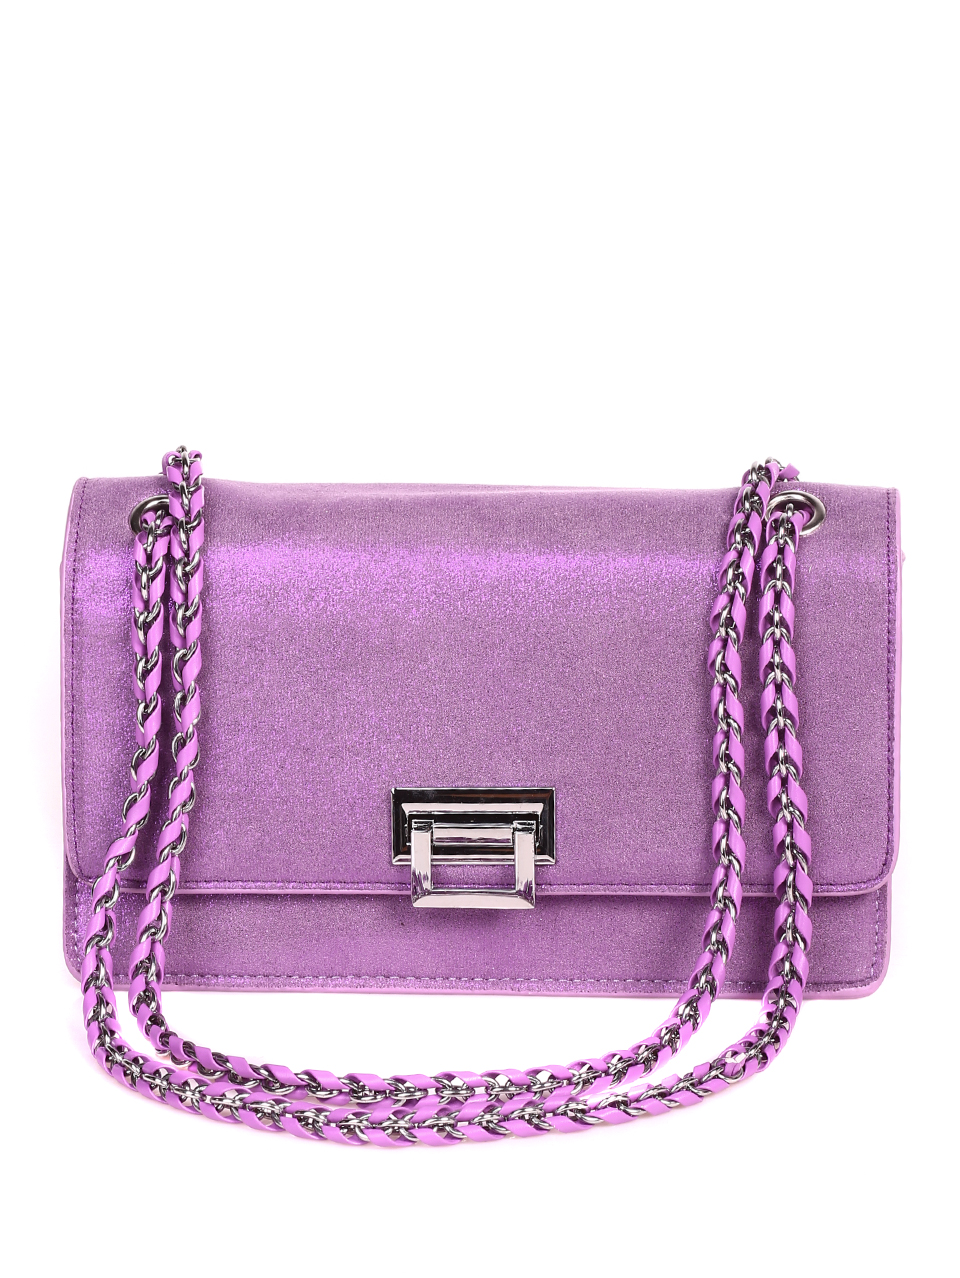 Елегантна дамска чанта в лилаво 9Q-21155 purple